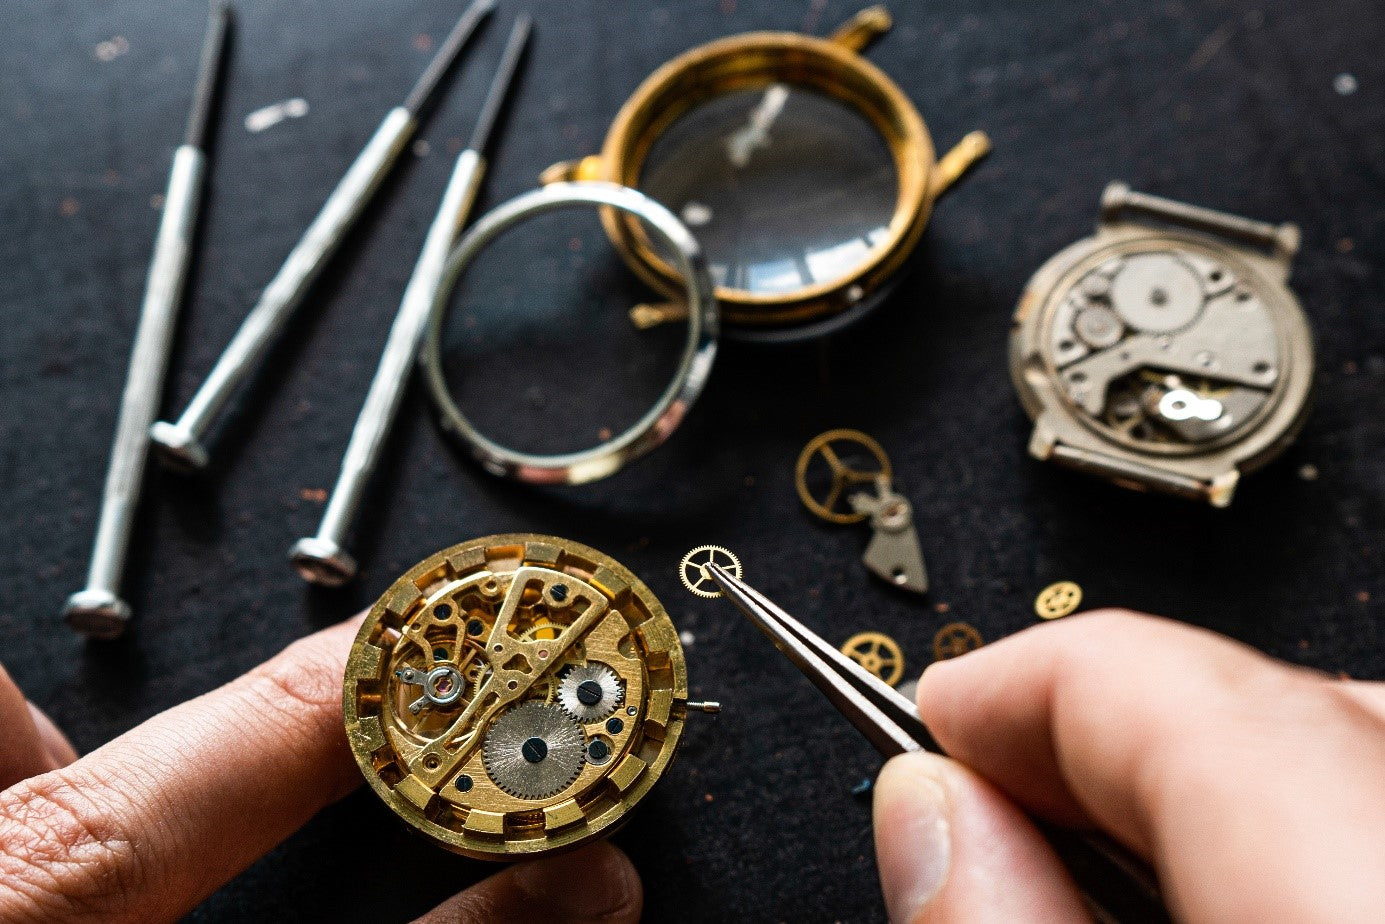 Uhrmacher als Beruf - mit Liebe zum Detail